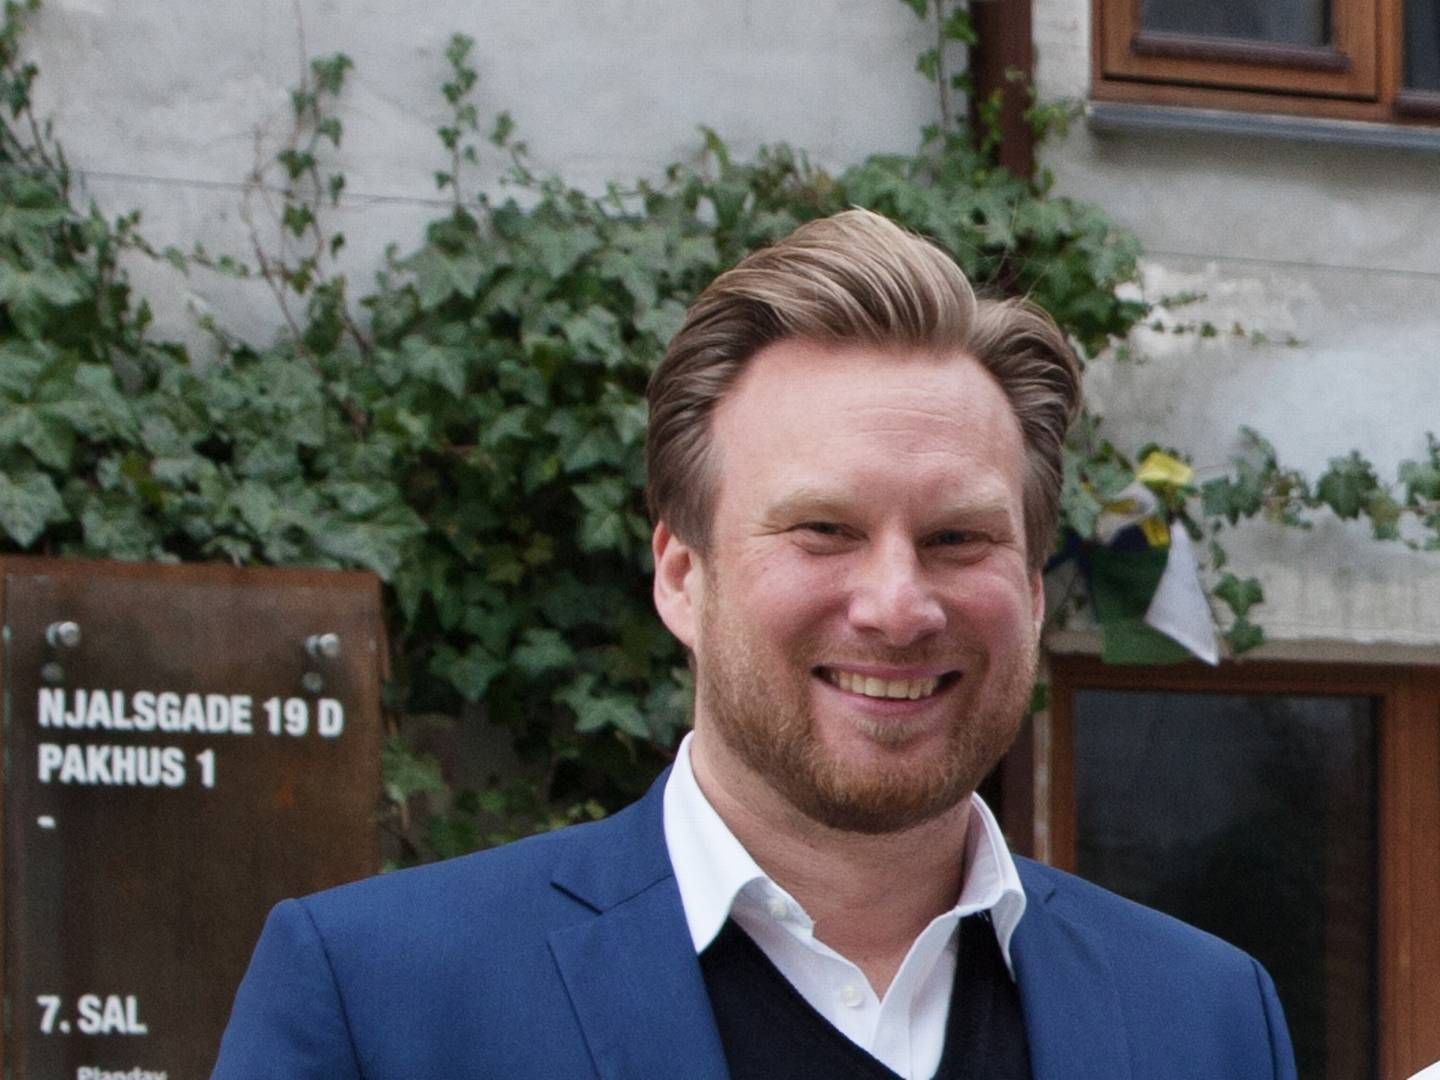 Christian Brøndum vinker farvel til it-selskabet Planday efter 11 år. Han skifter til en rolle hos venturefonden Seed Capital, hvor han efter planen skal være managing partner fra 2024. | Foto: PR/Planday